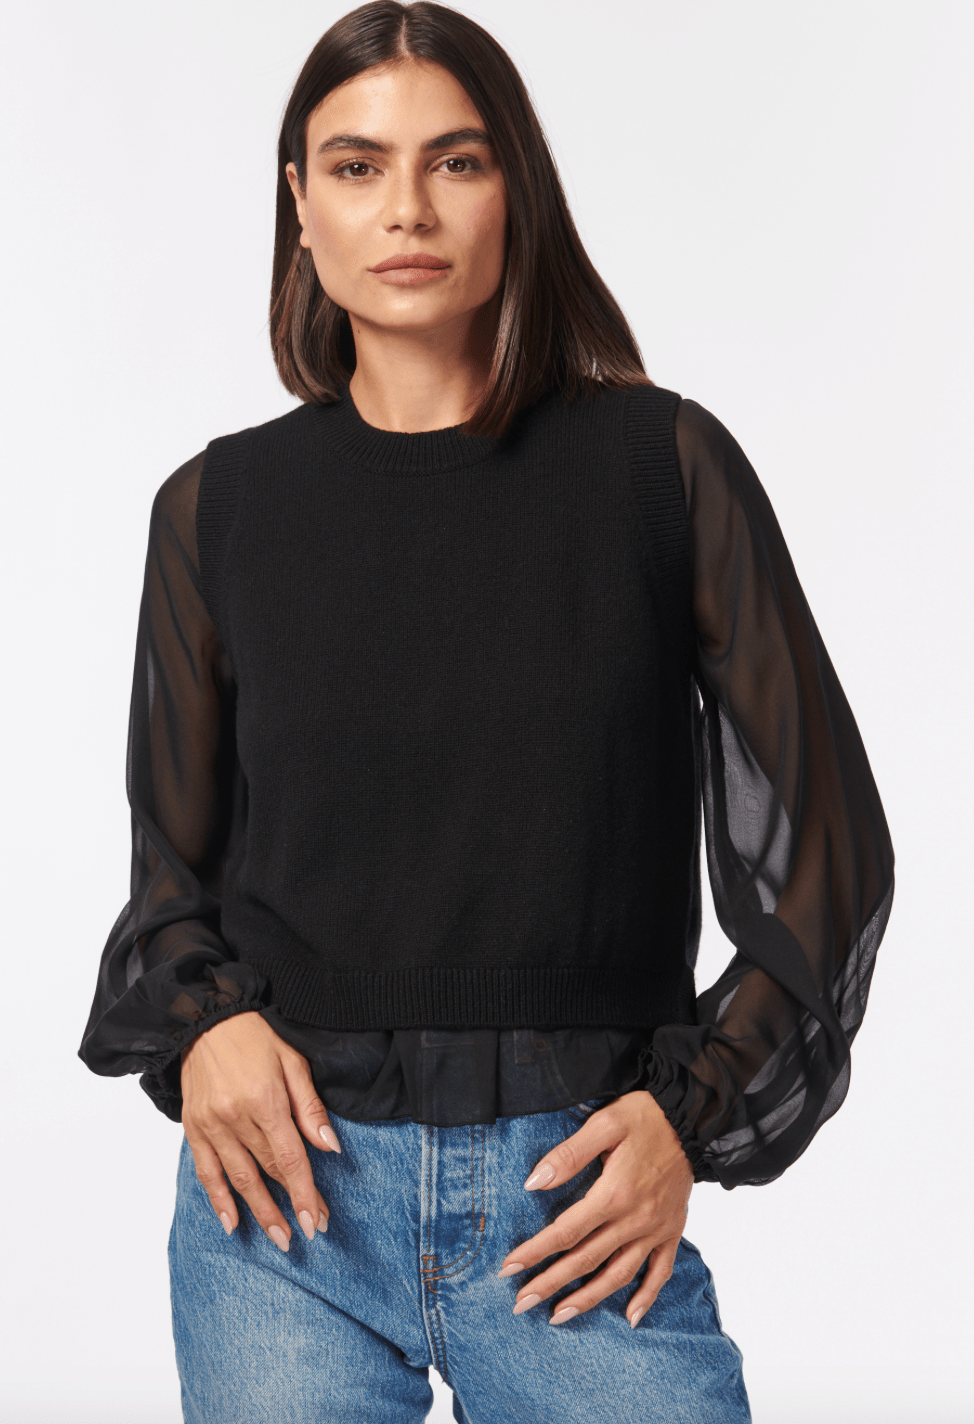 Cami Meli Sweater in Black - Estilo Boutique